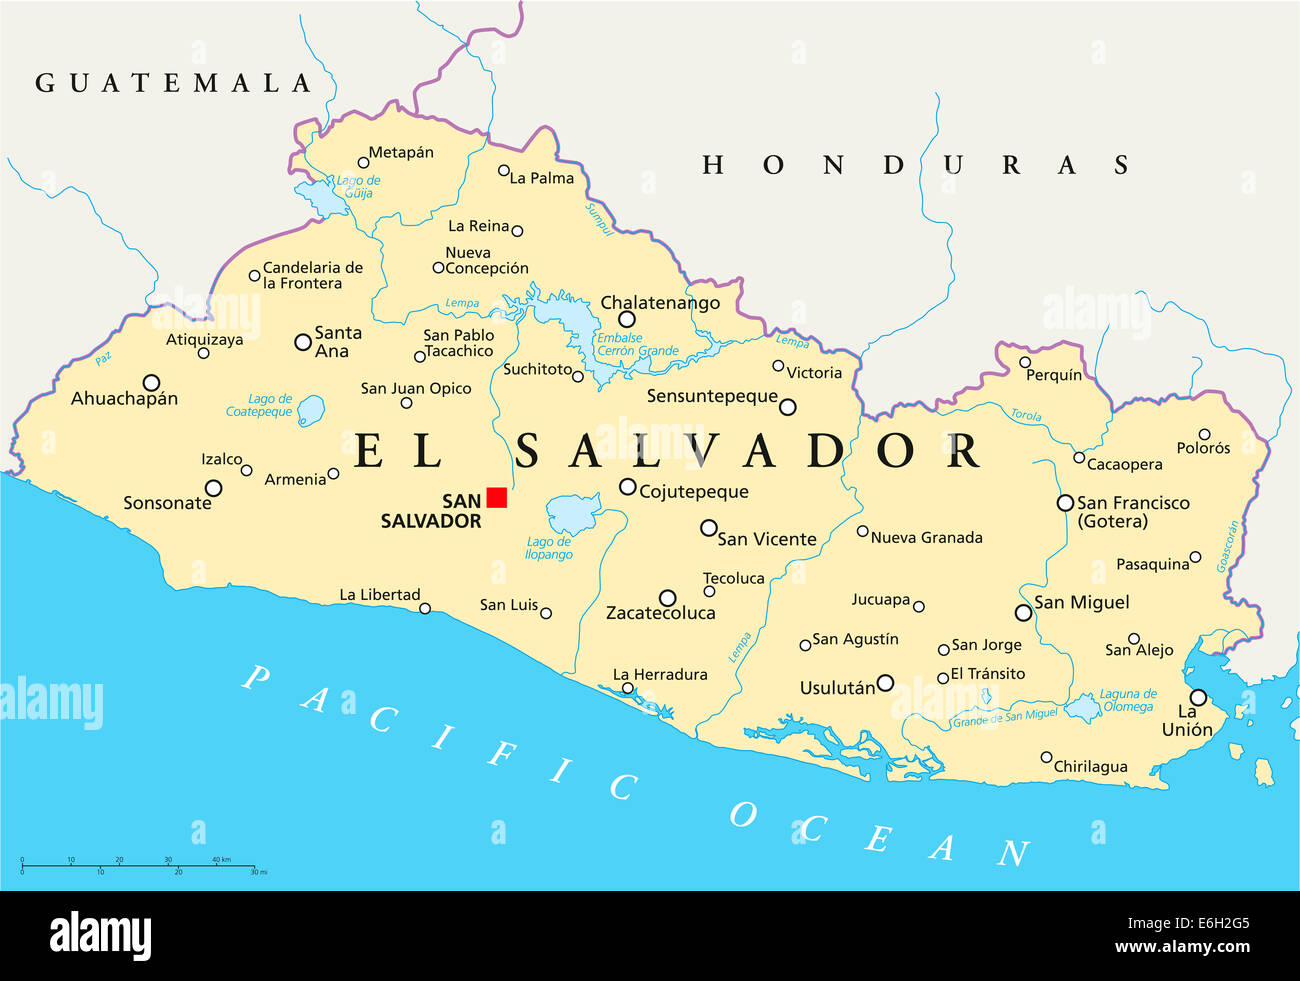 El Salvador Mappa Politico con capitale San Salvador, confini nazionali più importanti città, fiumi e laghi. Etichetta inglese Foto Stock